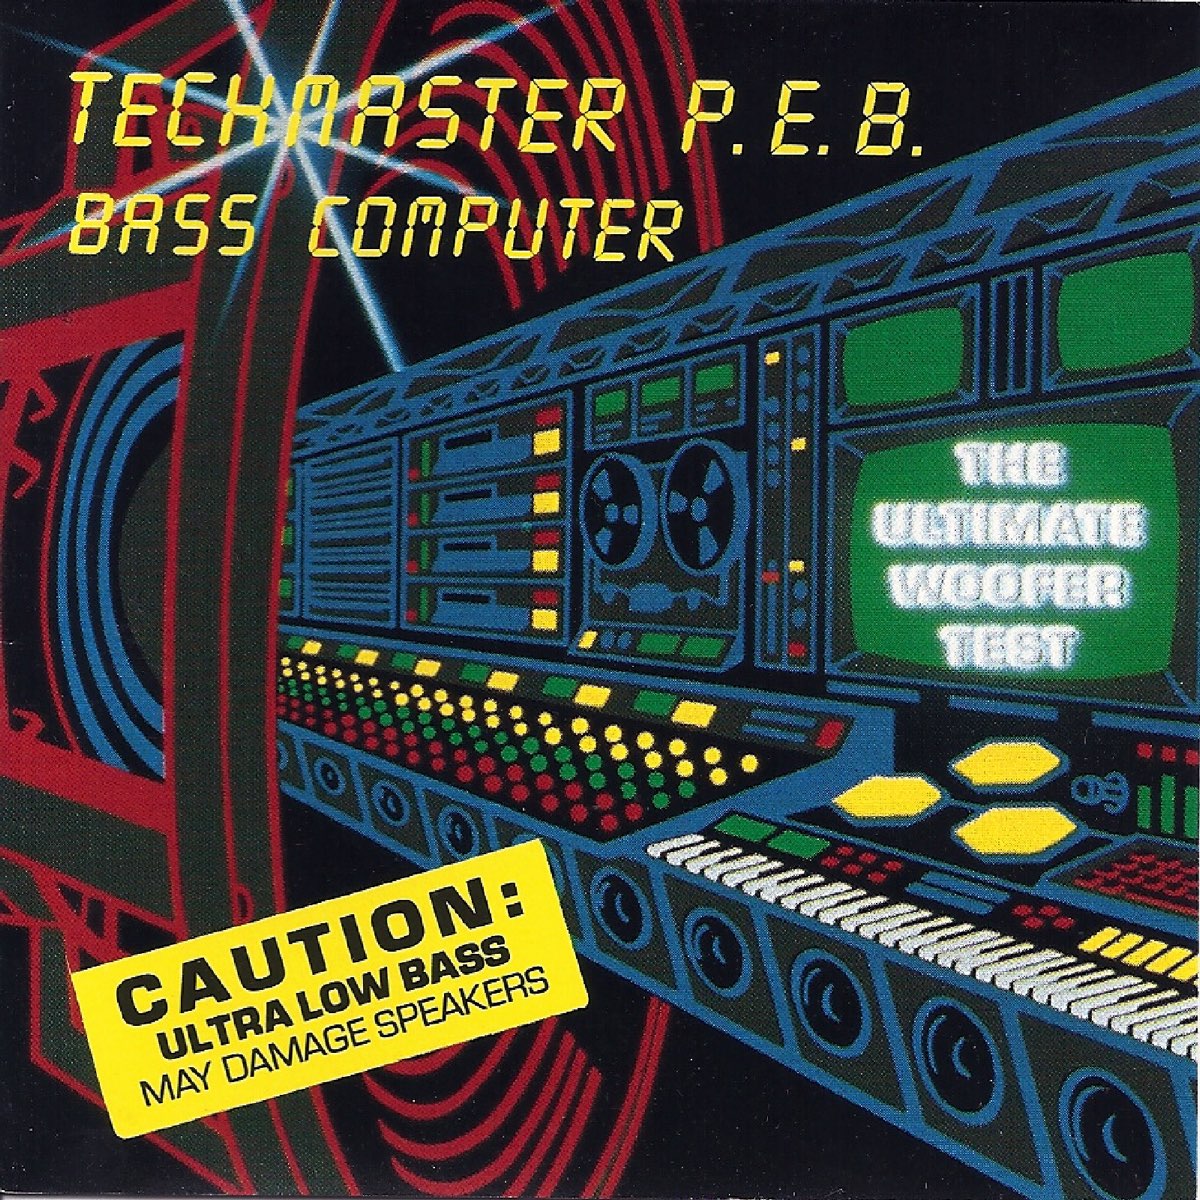 Техно басс. Techmaster p.e.b.. DJ Mixoid. Техно басс музыка.